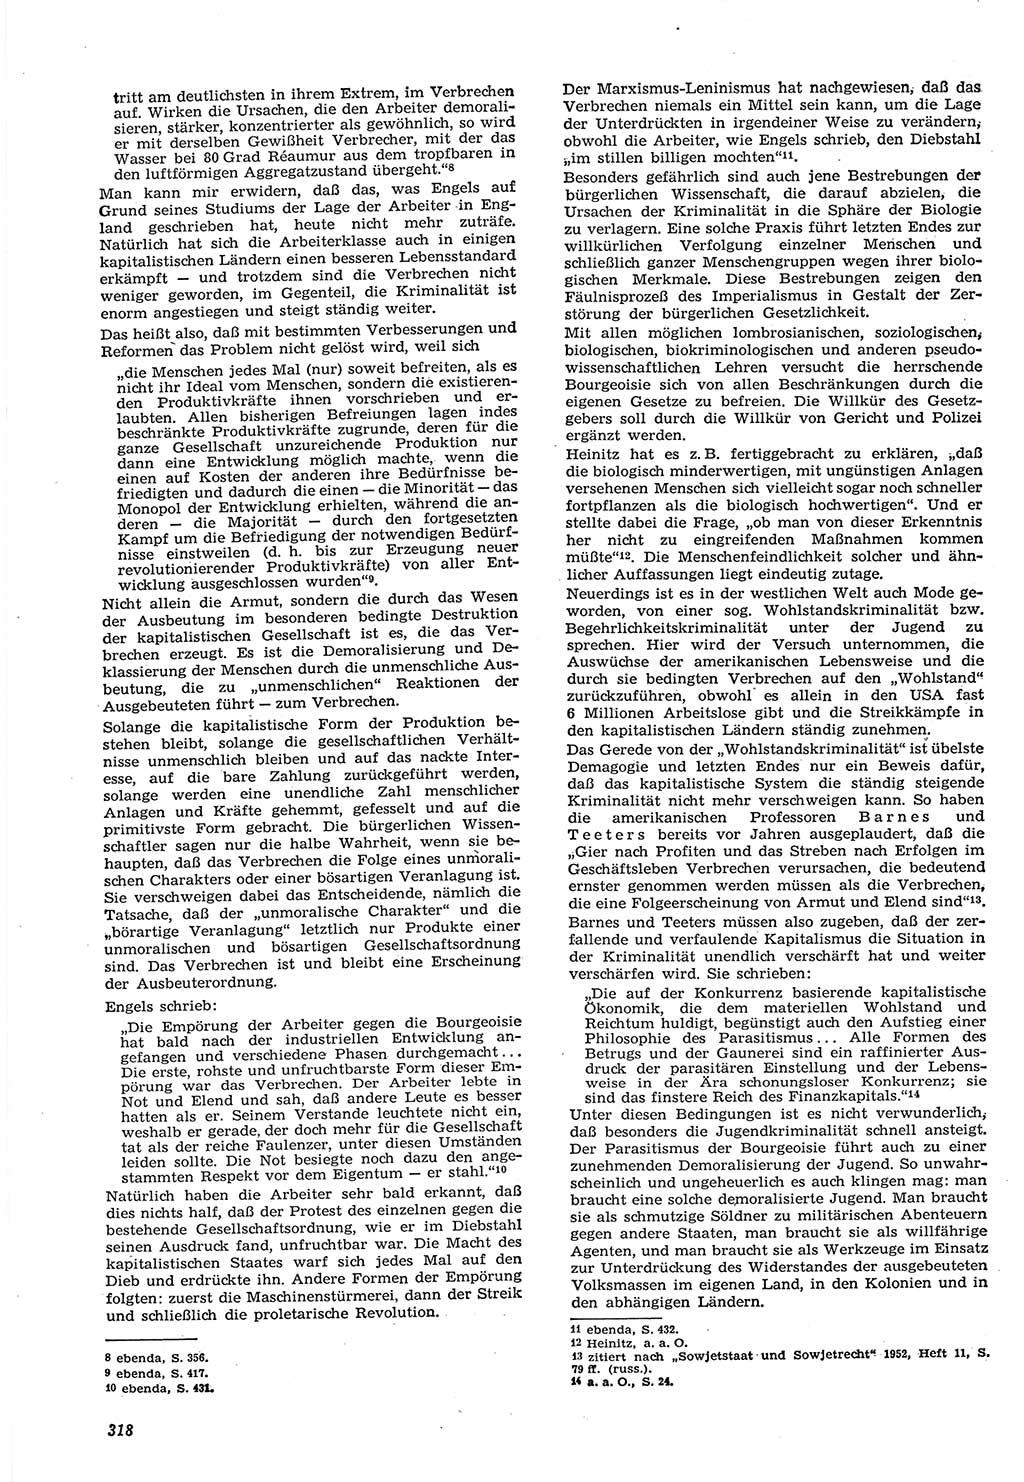 Neue Justiz (NJ), Zeitschrift für Recht und Rechtswissenschaft [Deutsche Demokratische Republik (DDR)], 15. Jahrgang 1961, Seite 318 (NJ DDR 1961, S. 318)